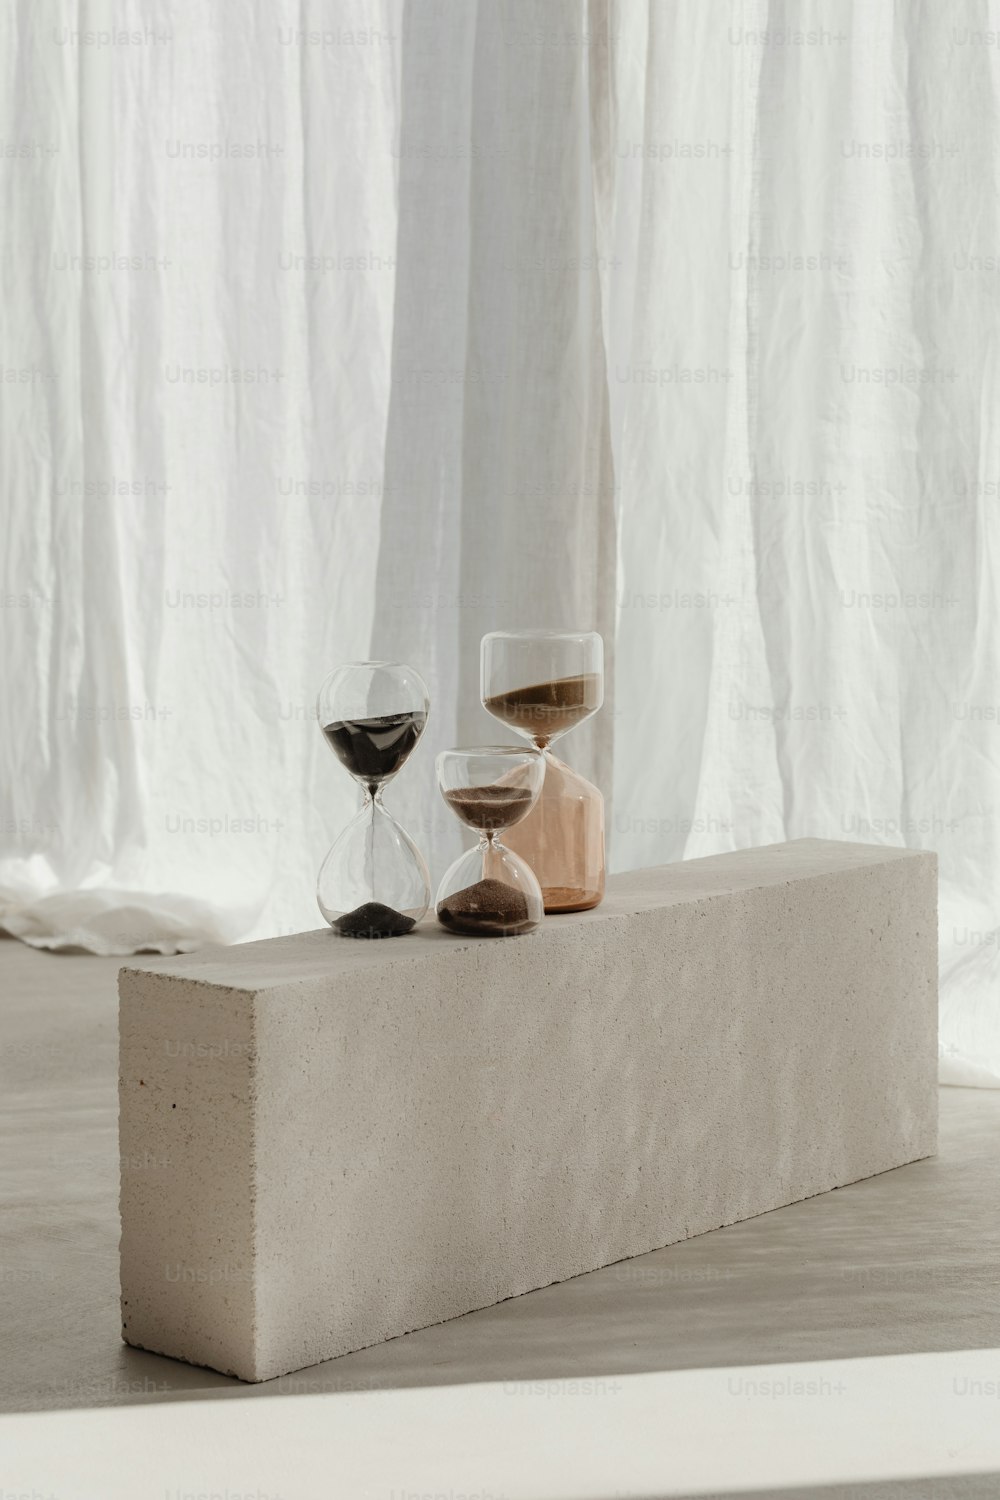 Quelques verres à vin assis sur un bloc de béton